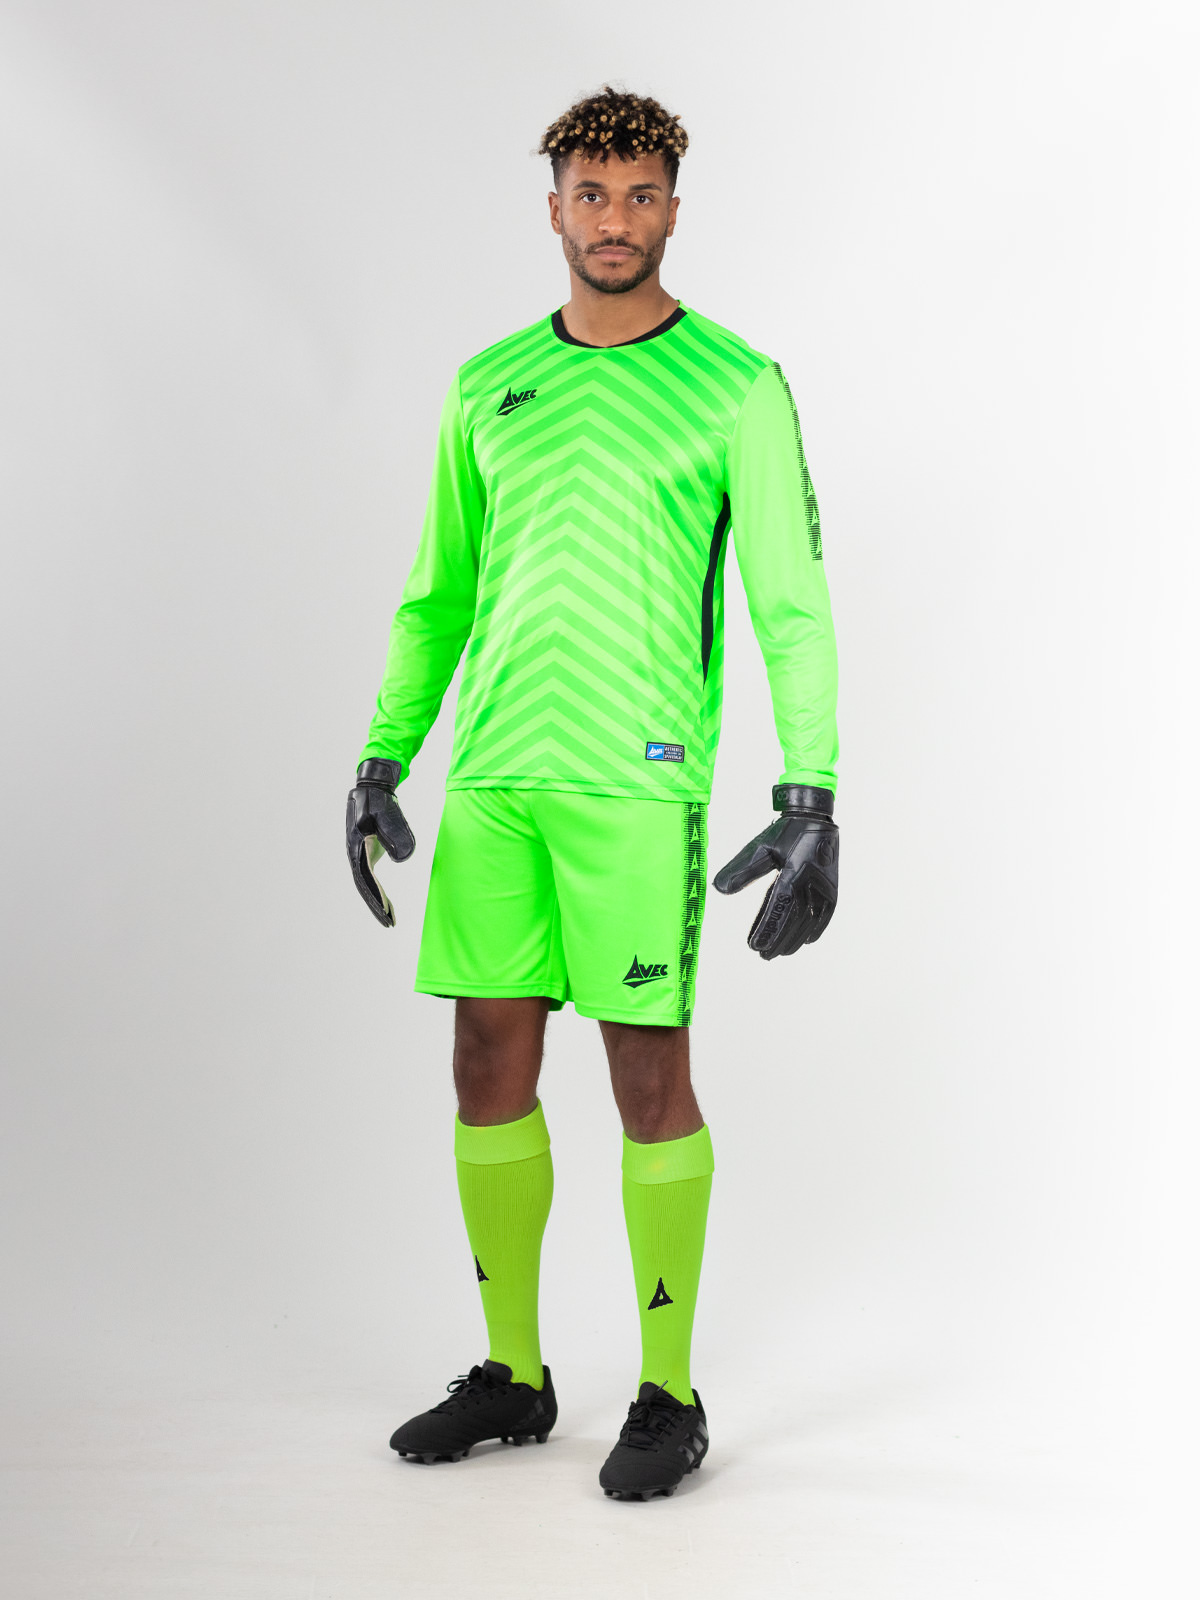 Avec Sport - Goalkeeper Football Shirt - Neon Green - Team ID Pro Goalkeeper Jersey - Mens